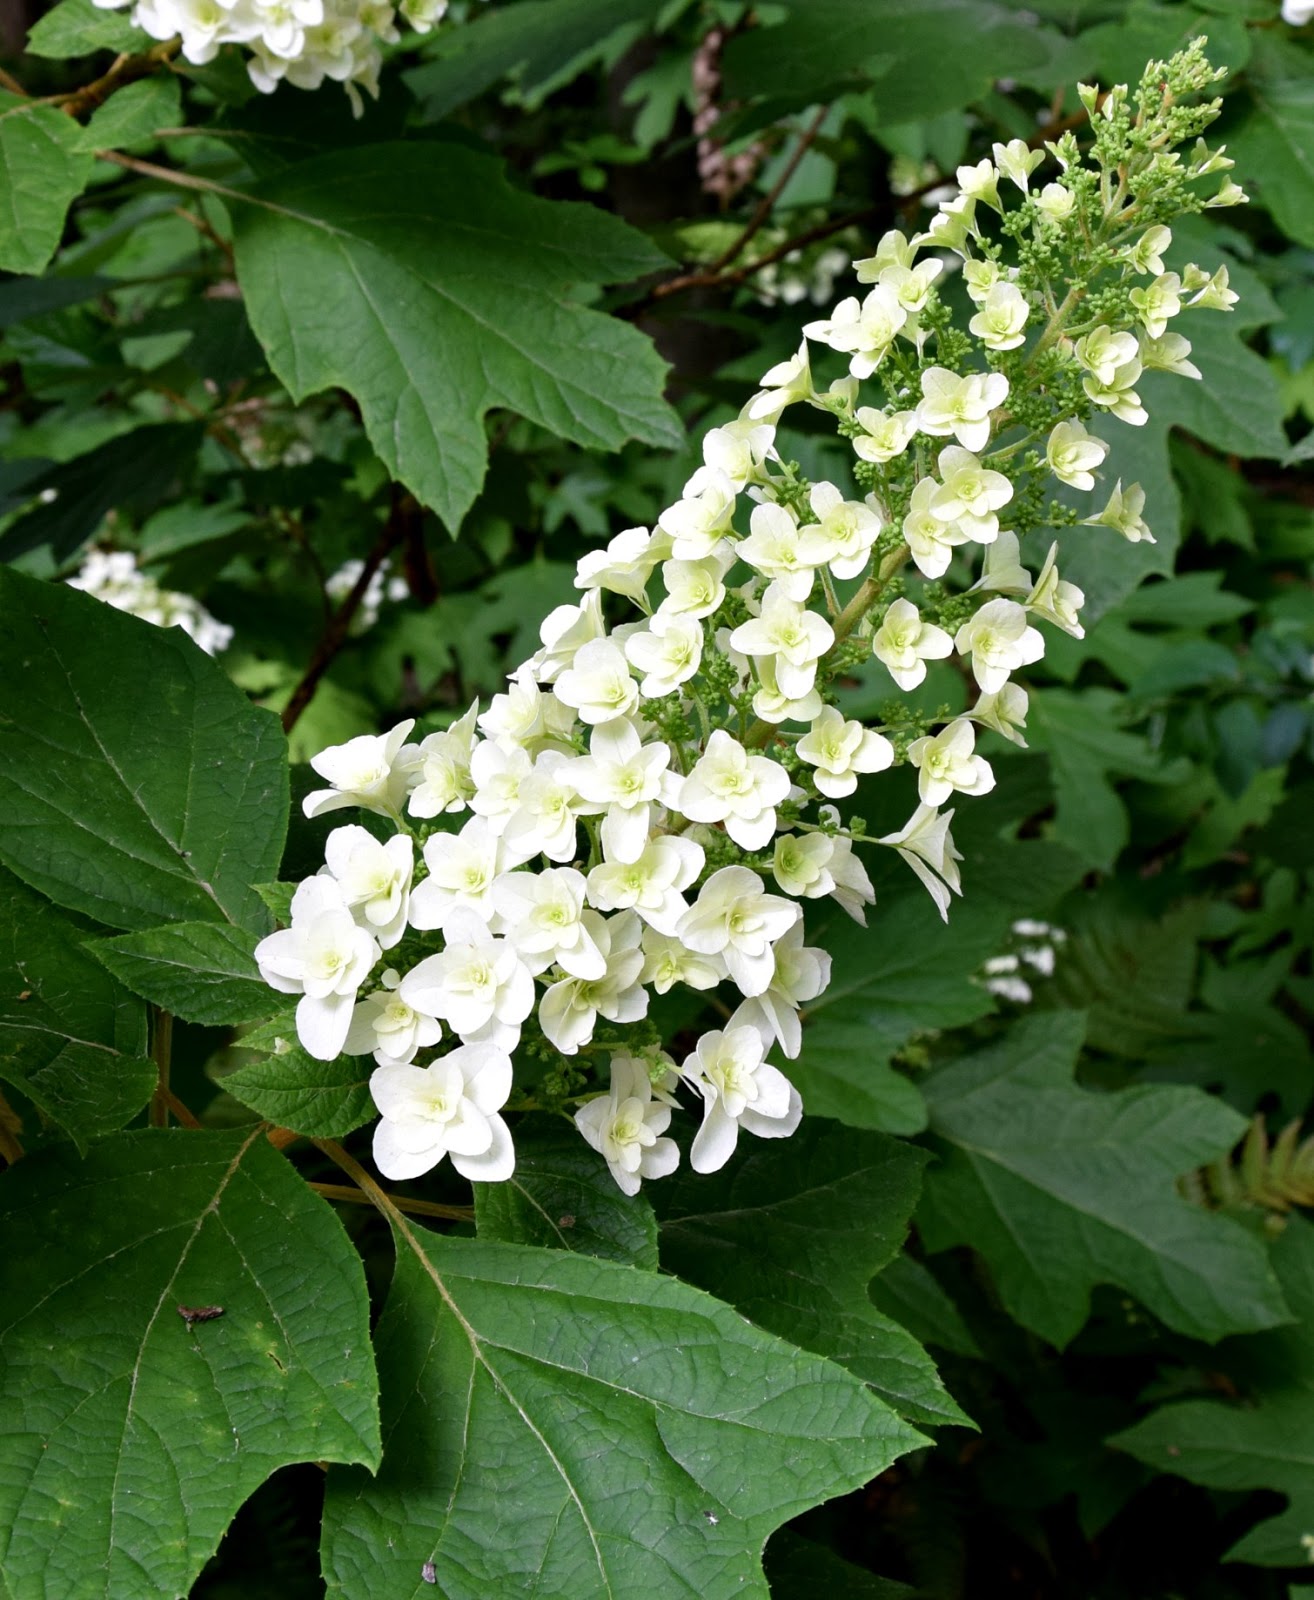 hydrangea oakleaf plants georgia native flowering season shrub form four using